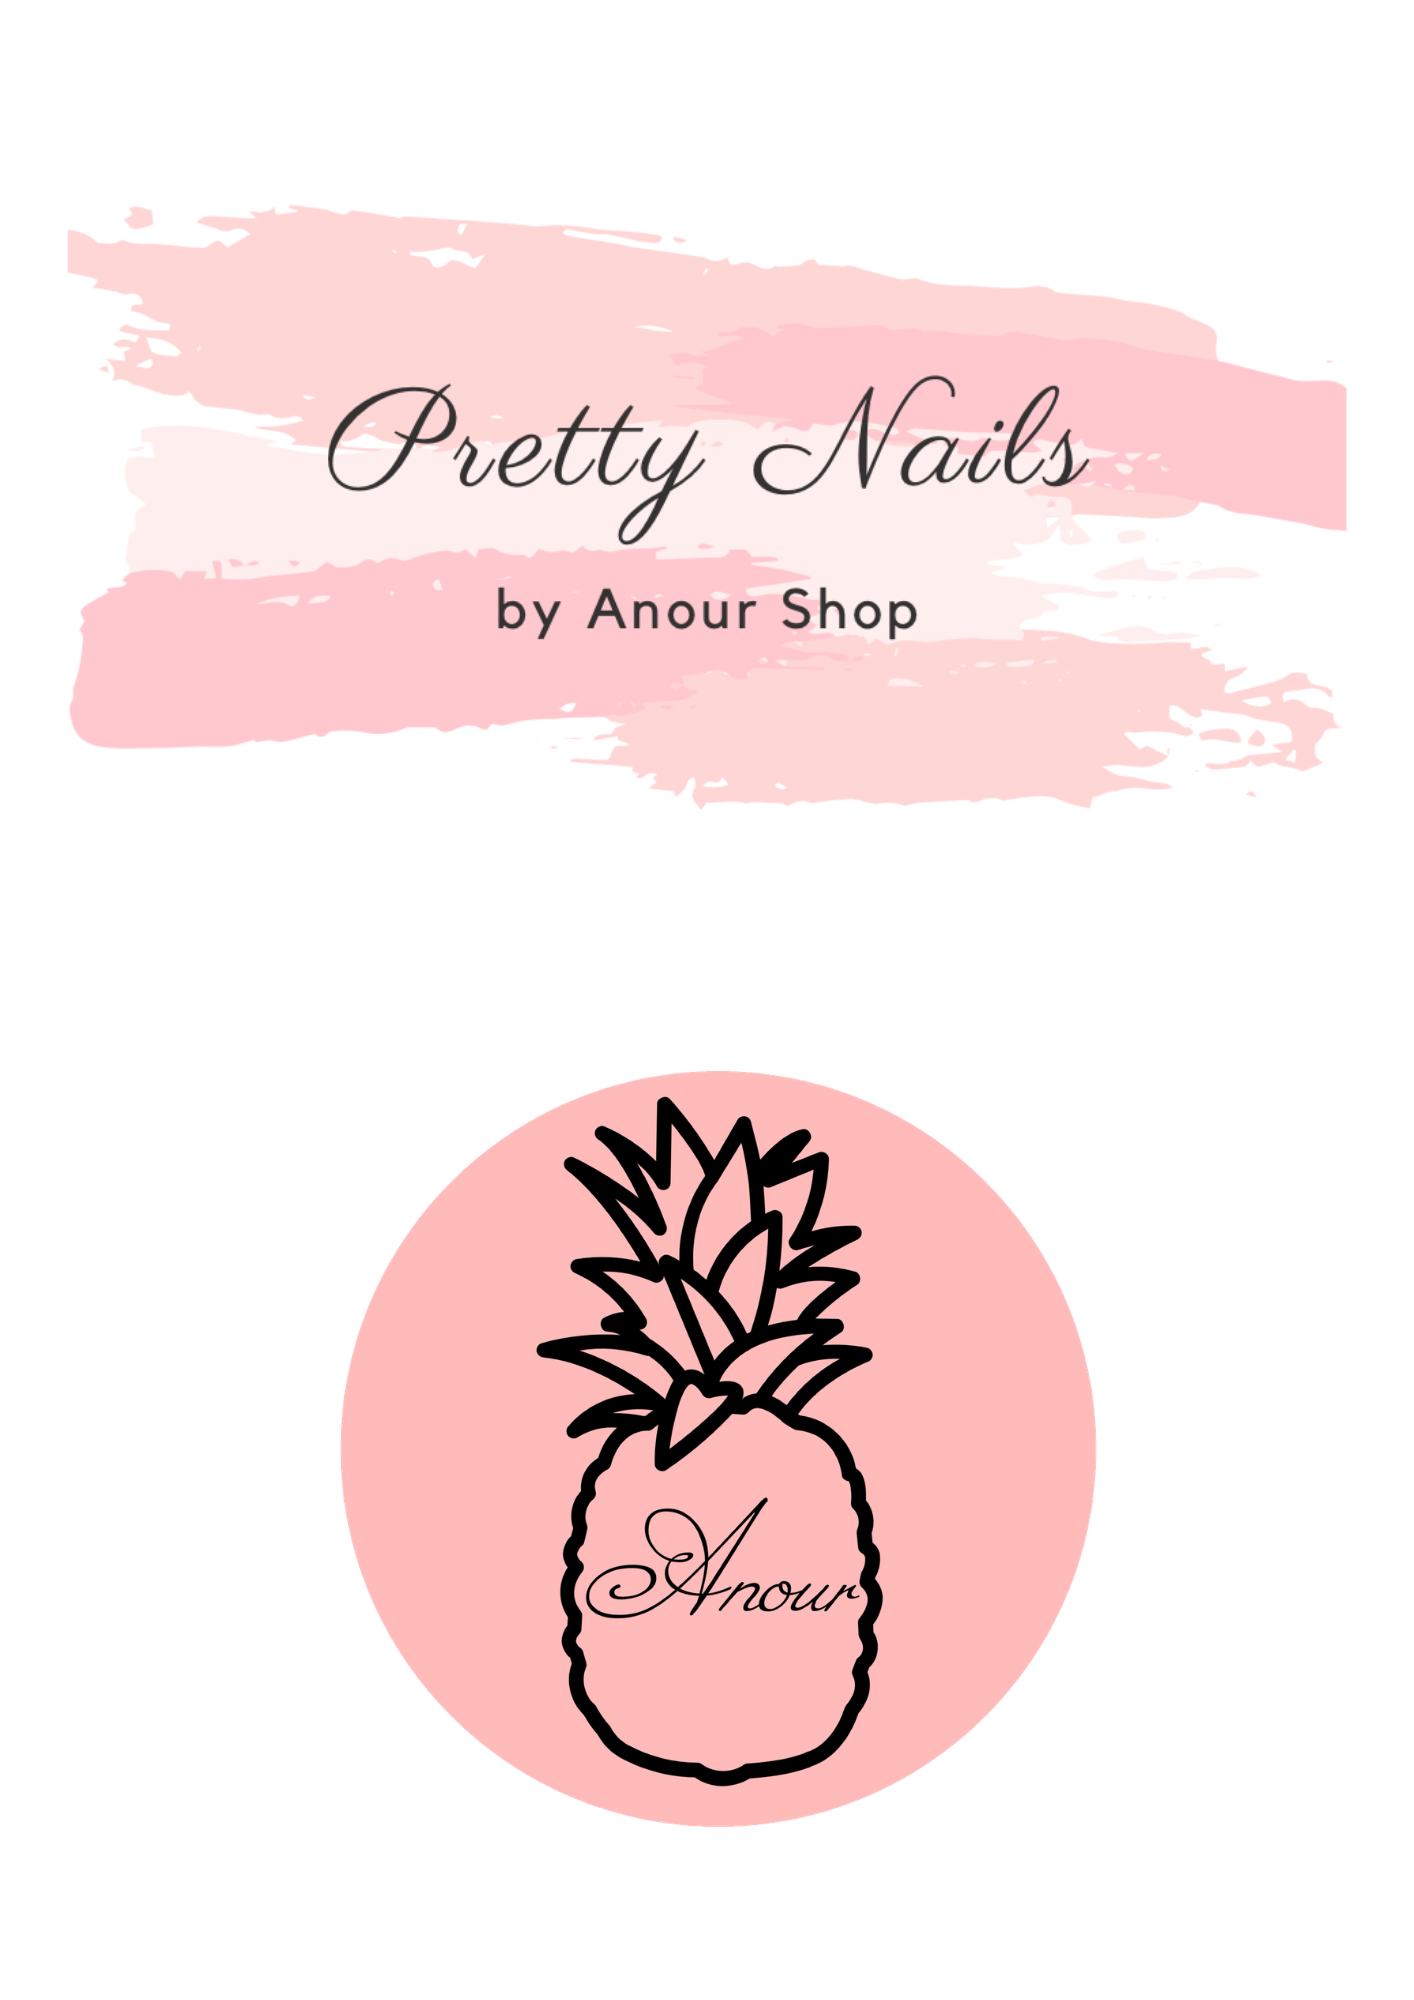 Anour Shop SNC et Pretty Nails by Anour